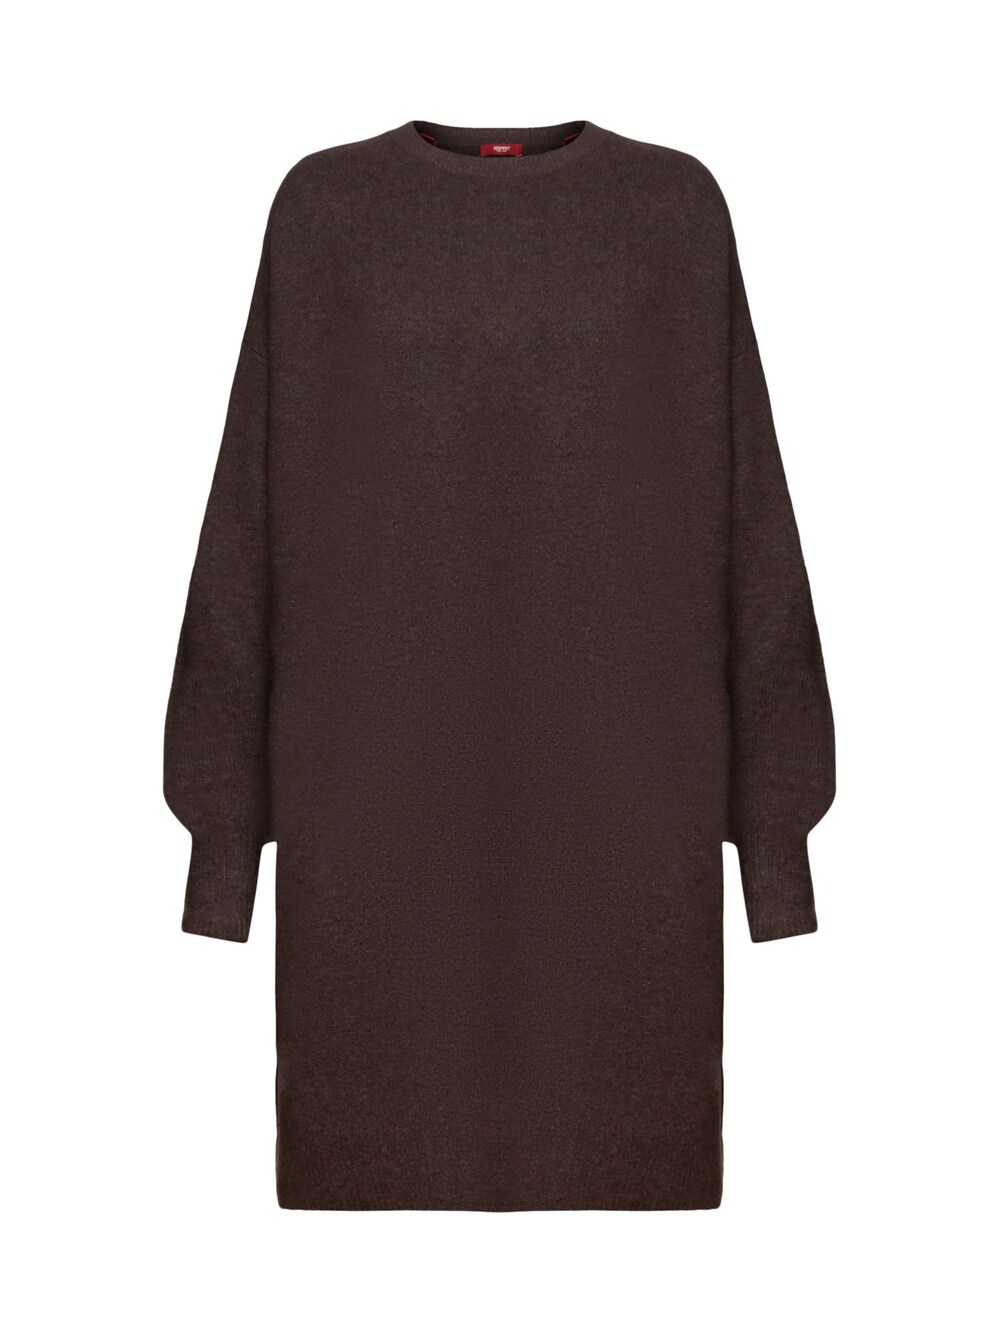 Вязанное платье Esprit, темно коричневый вязанное платье esprit песок